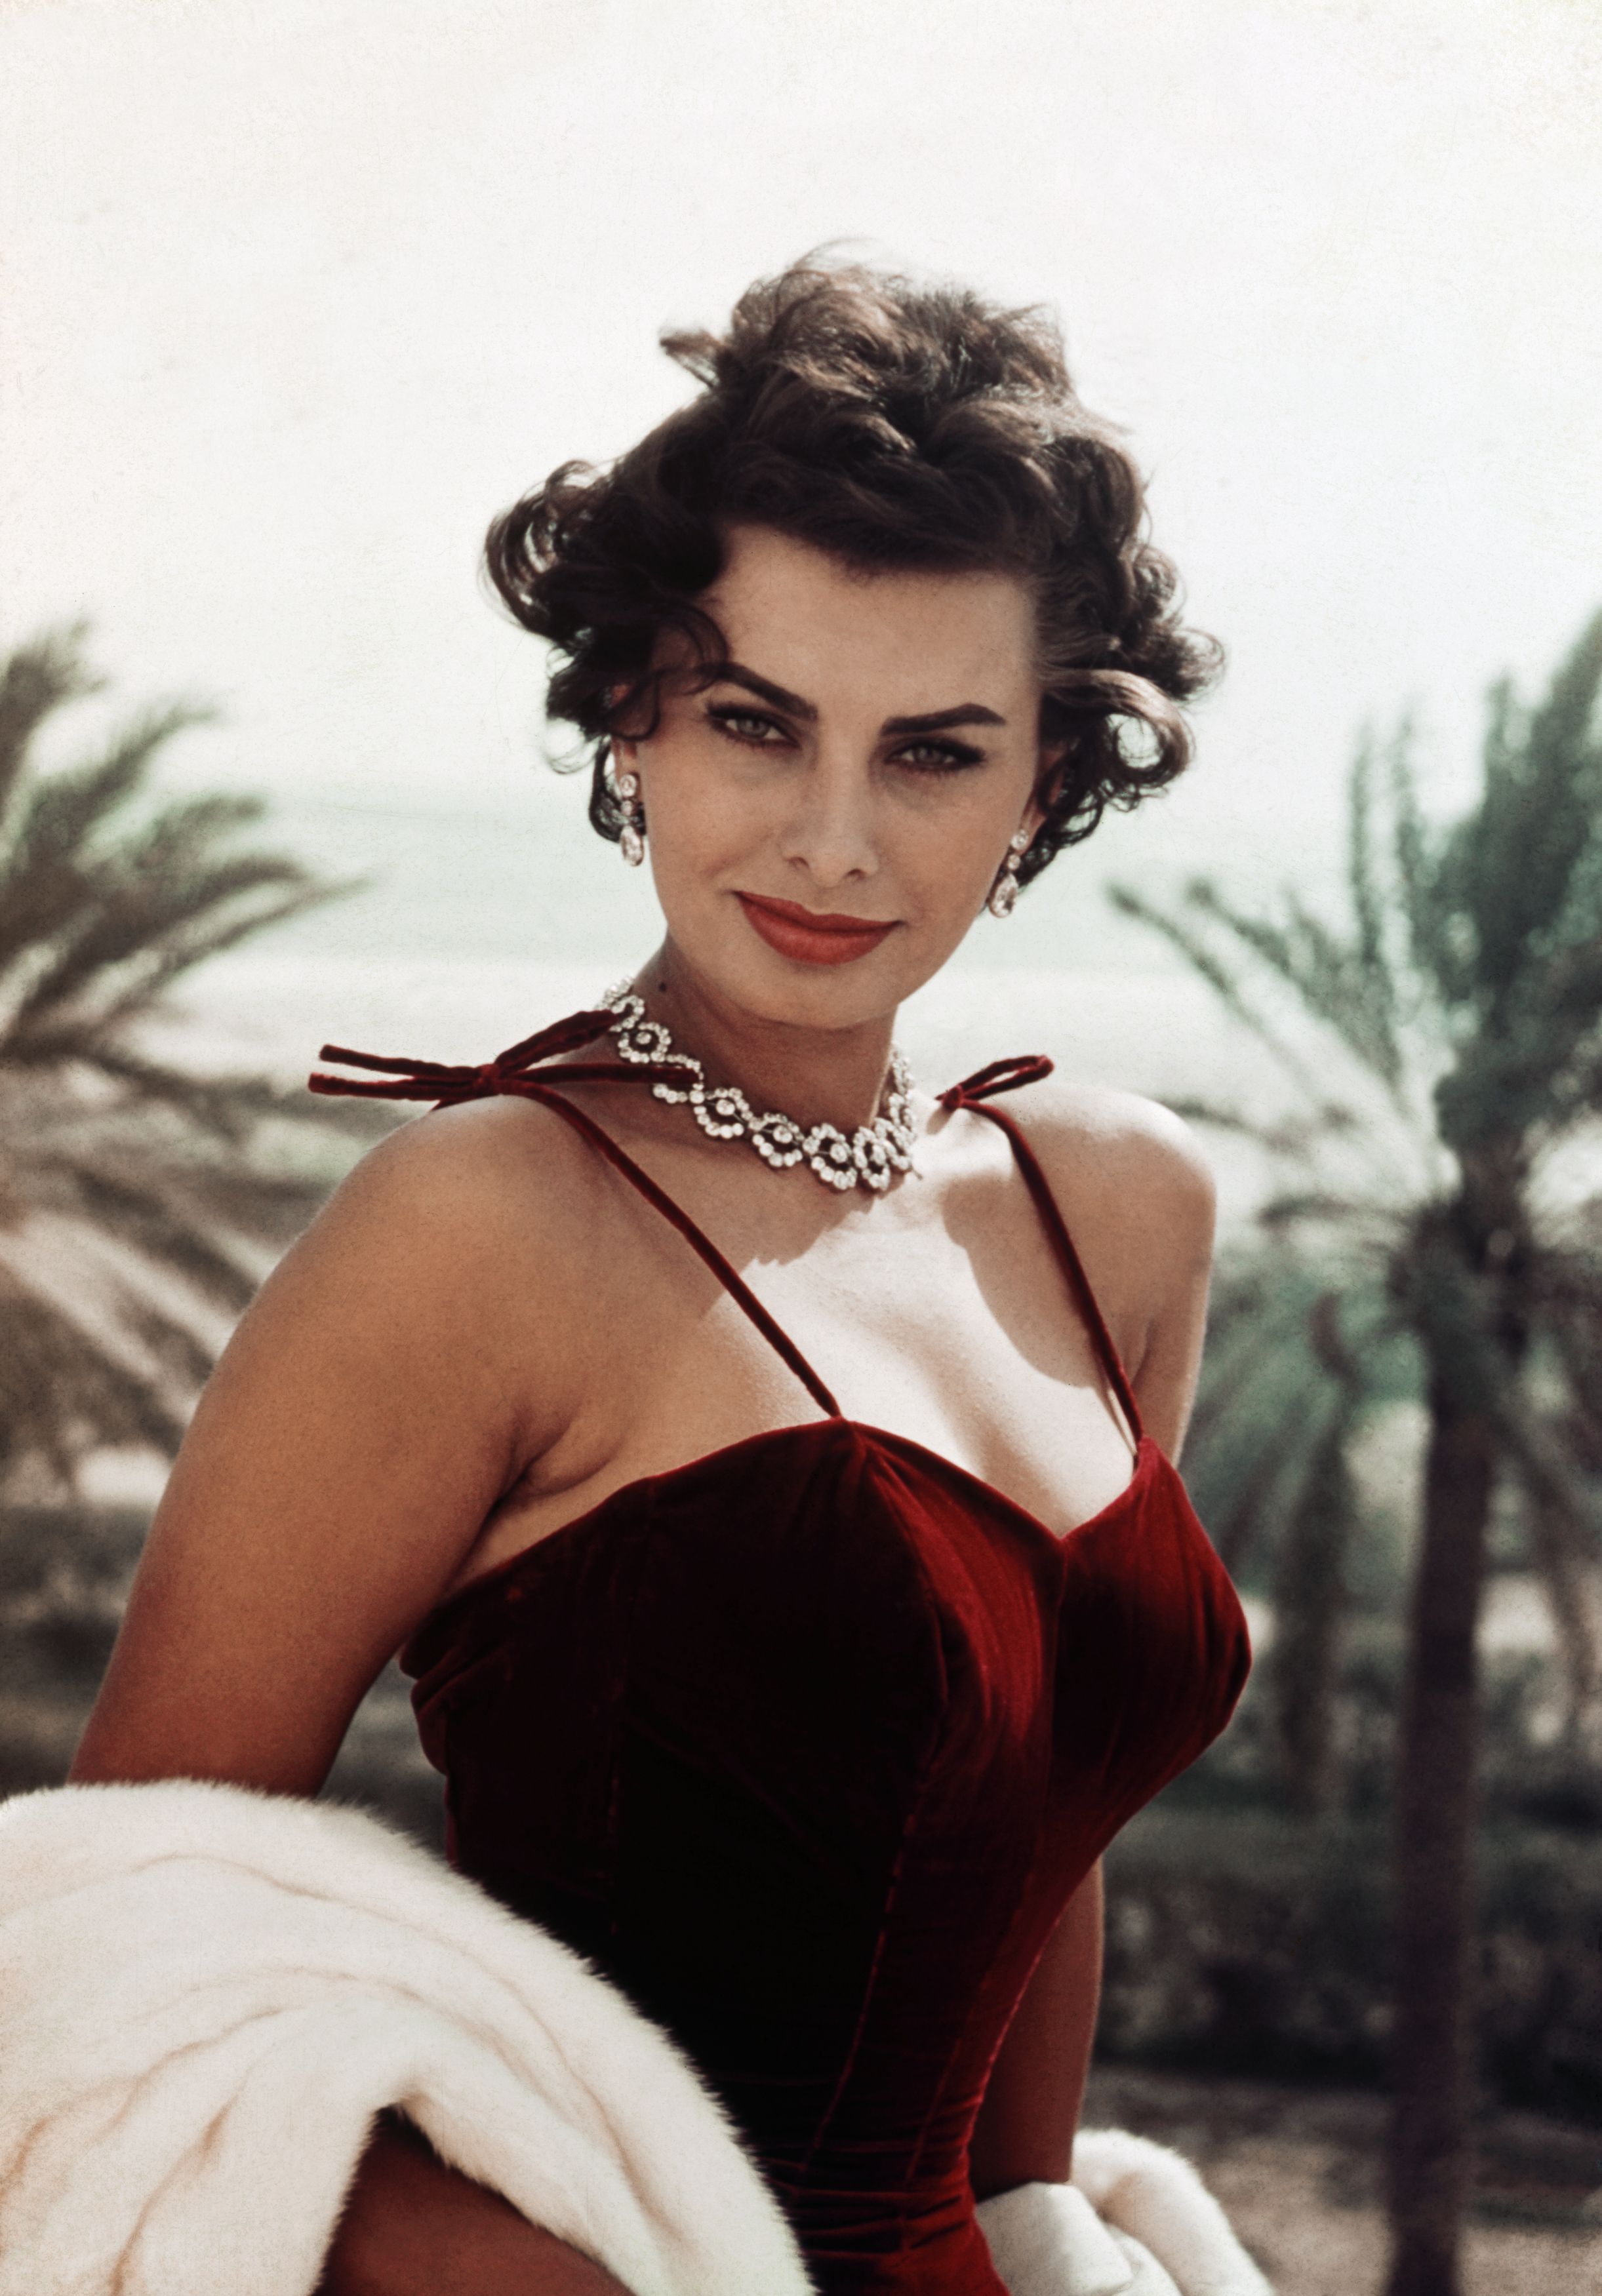  Biografía de Sophia Loren